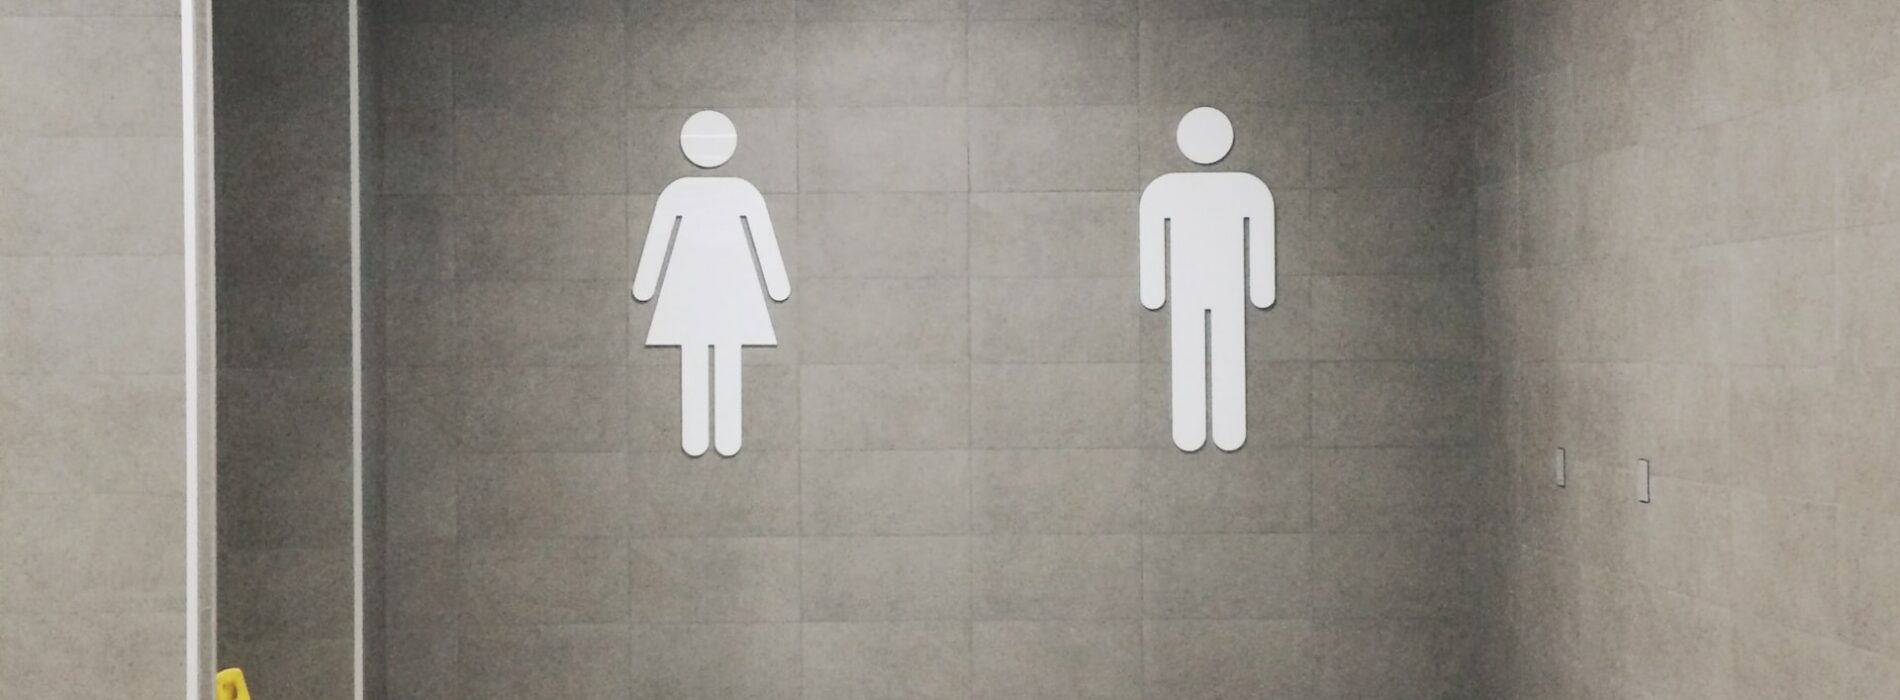 Toalety w restauracji – jak zadbać o ich czystość?